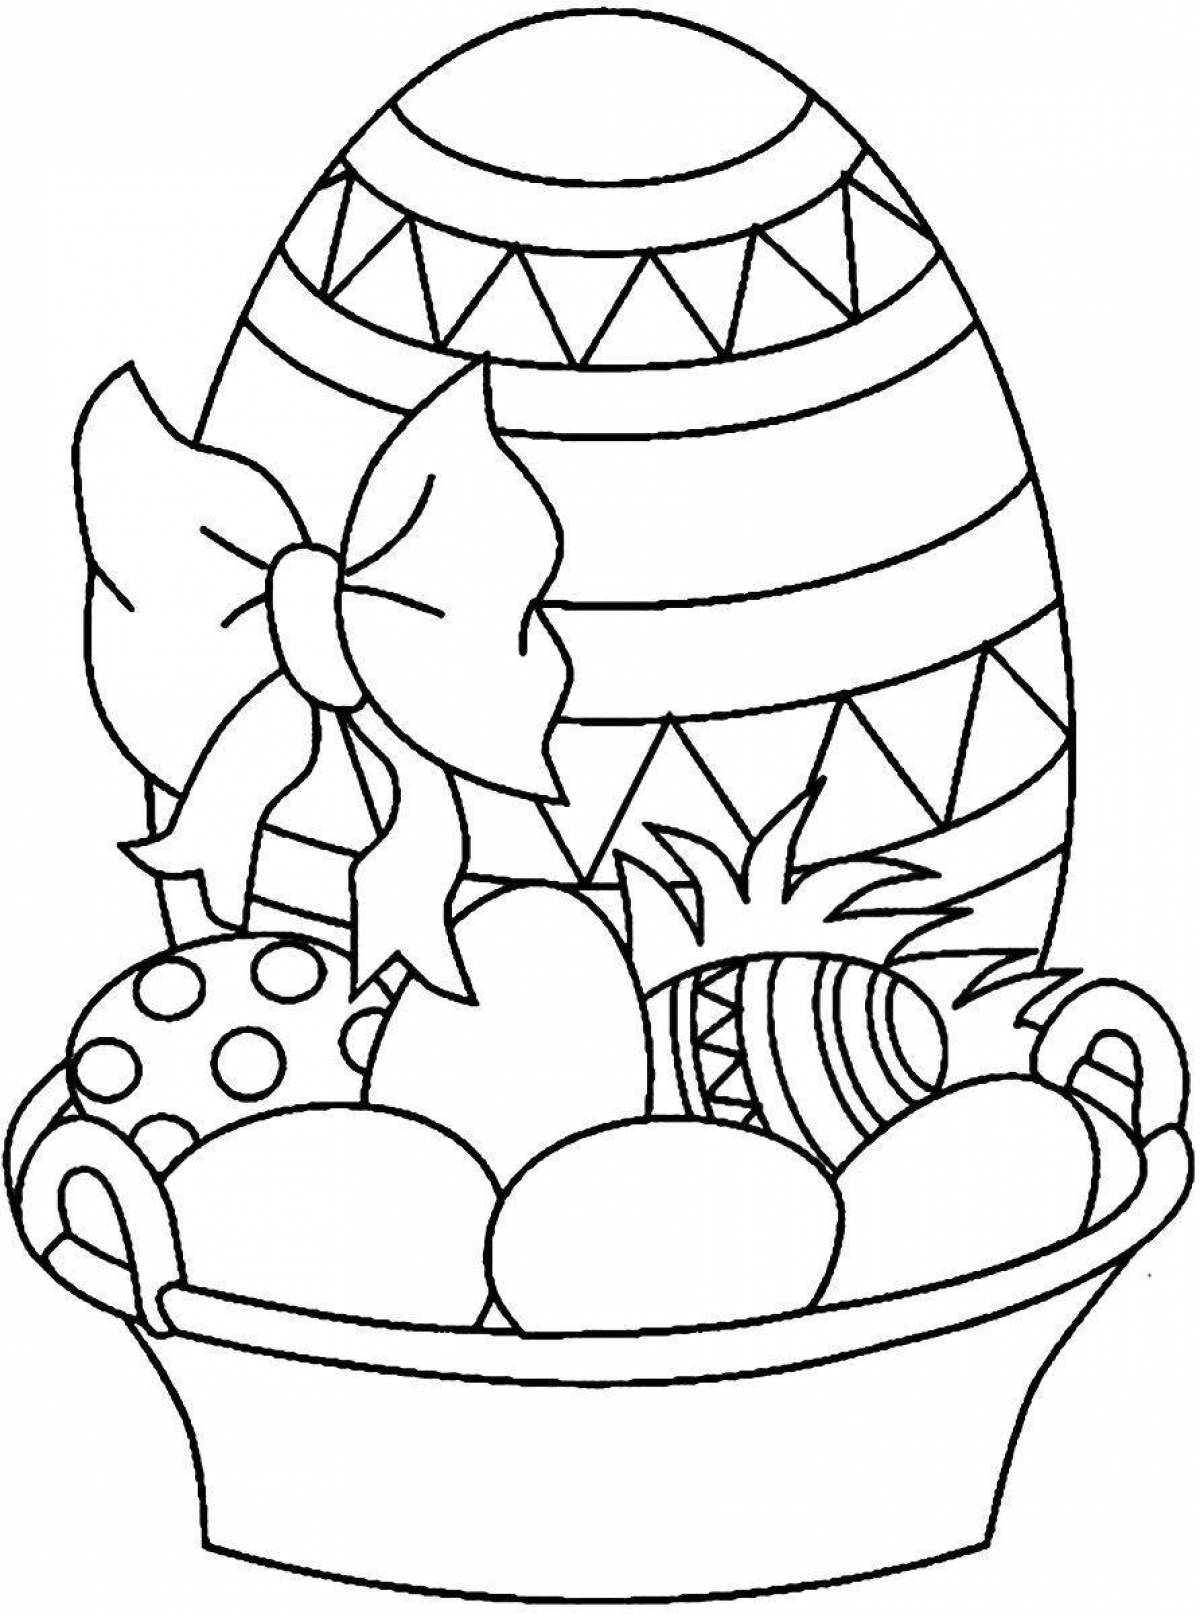 Рисунки на пасху для детей. Раскраски пасхальные для детей. Раскраска Пасха для детей. Пасхальное яйцо раскраска. Раскраска на тему Пасха для детей.